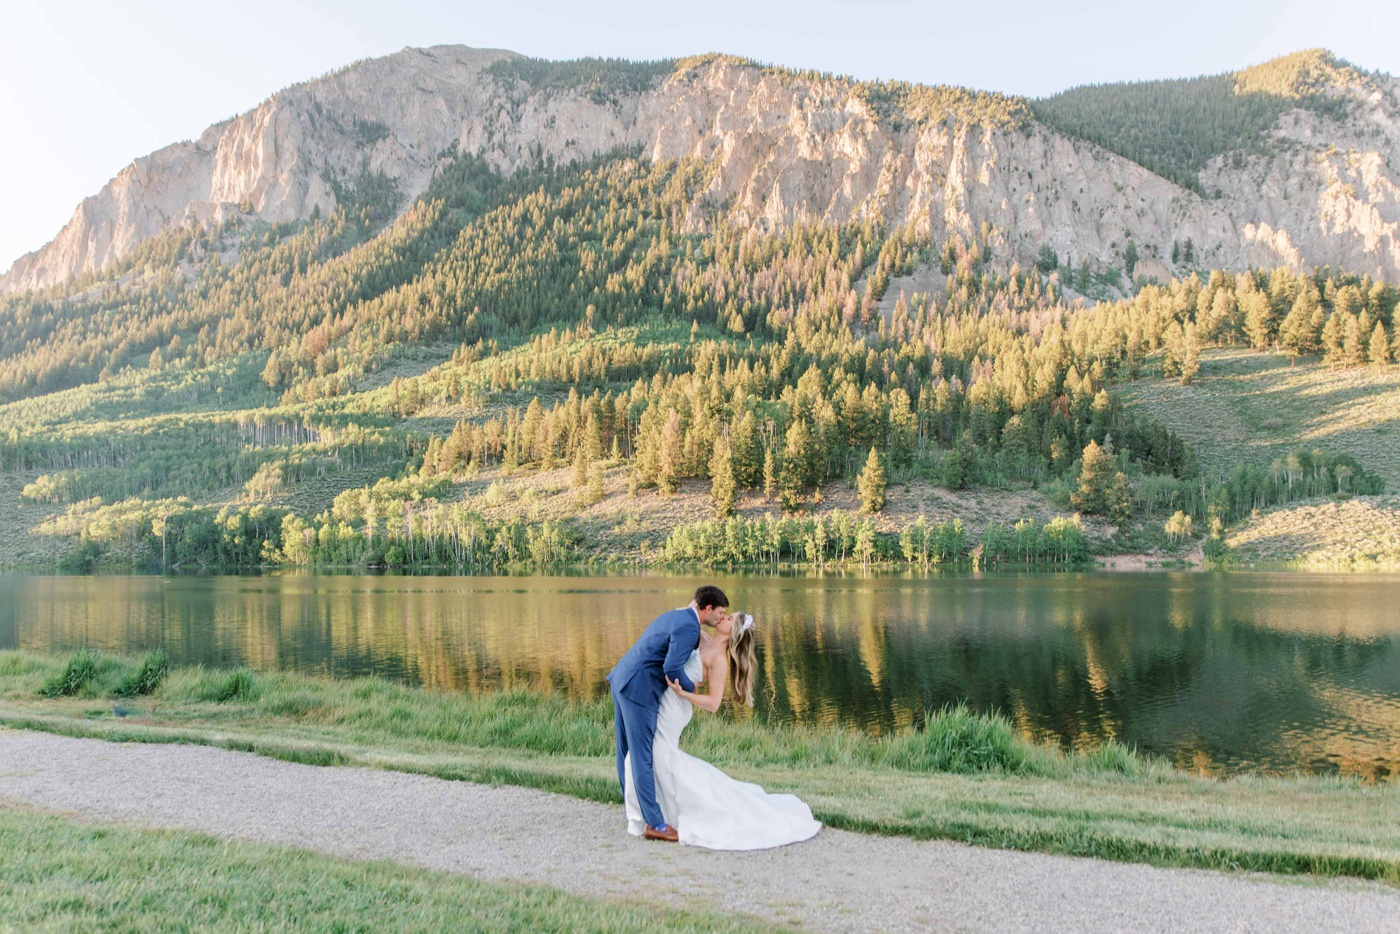 Colorado mountain view wedding venues